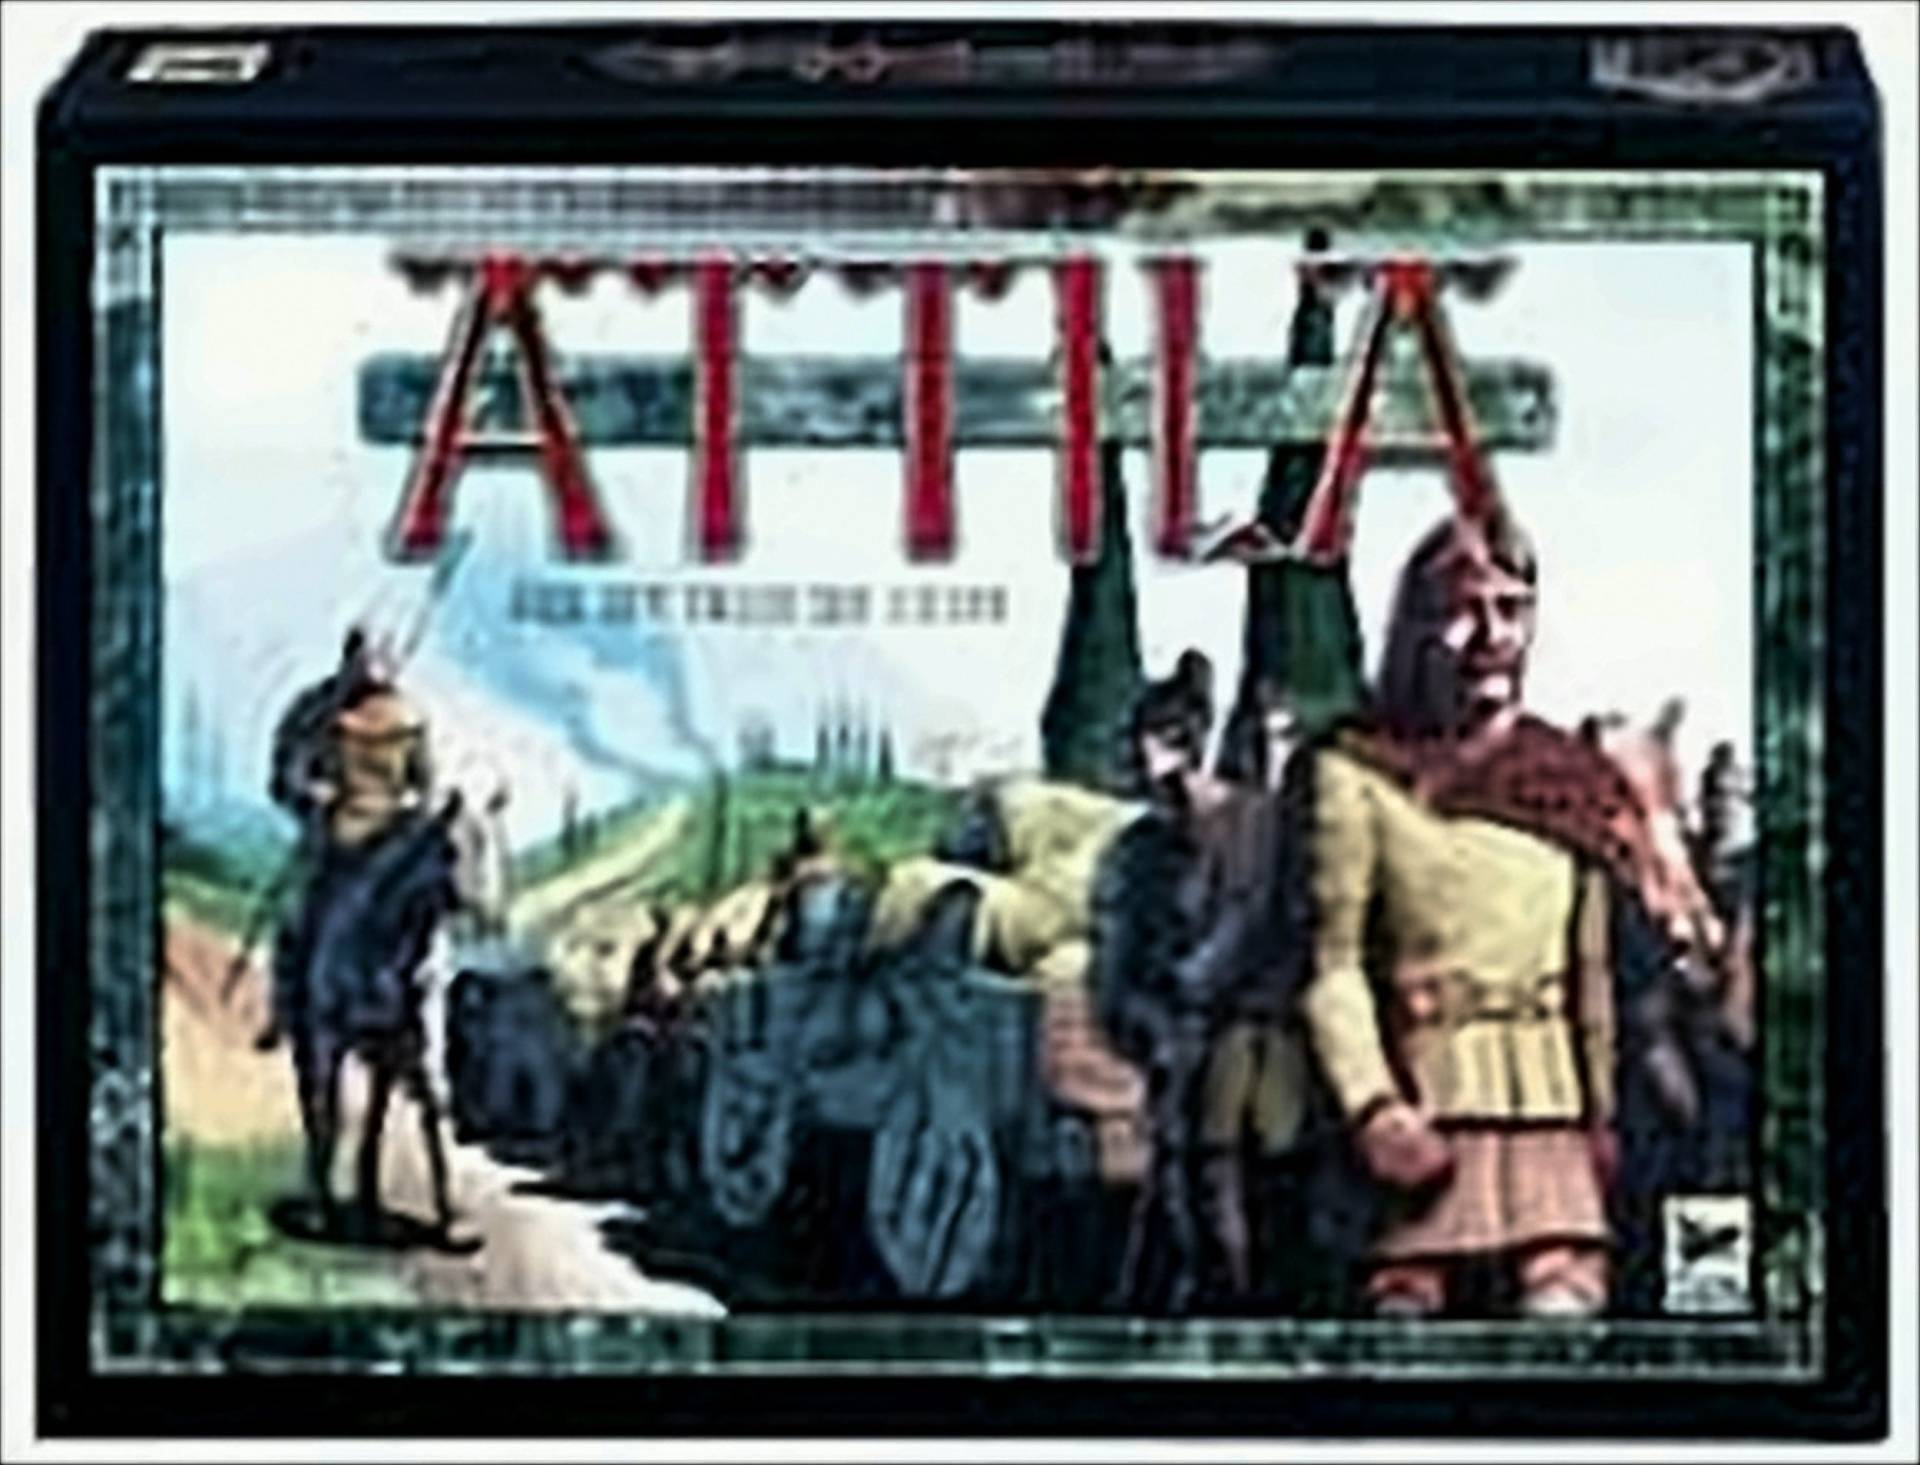 Attila - Aus den Tiefen der Steppe von Hans im Glück